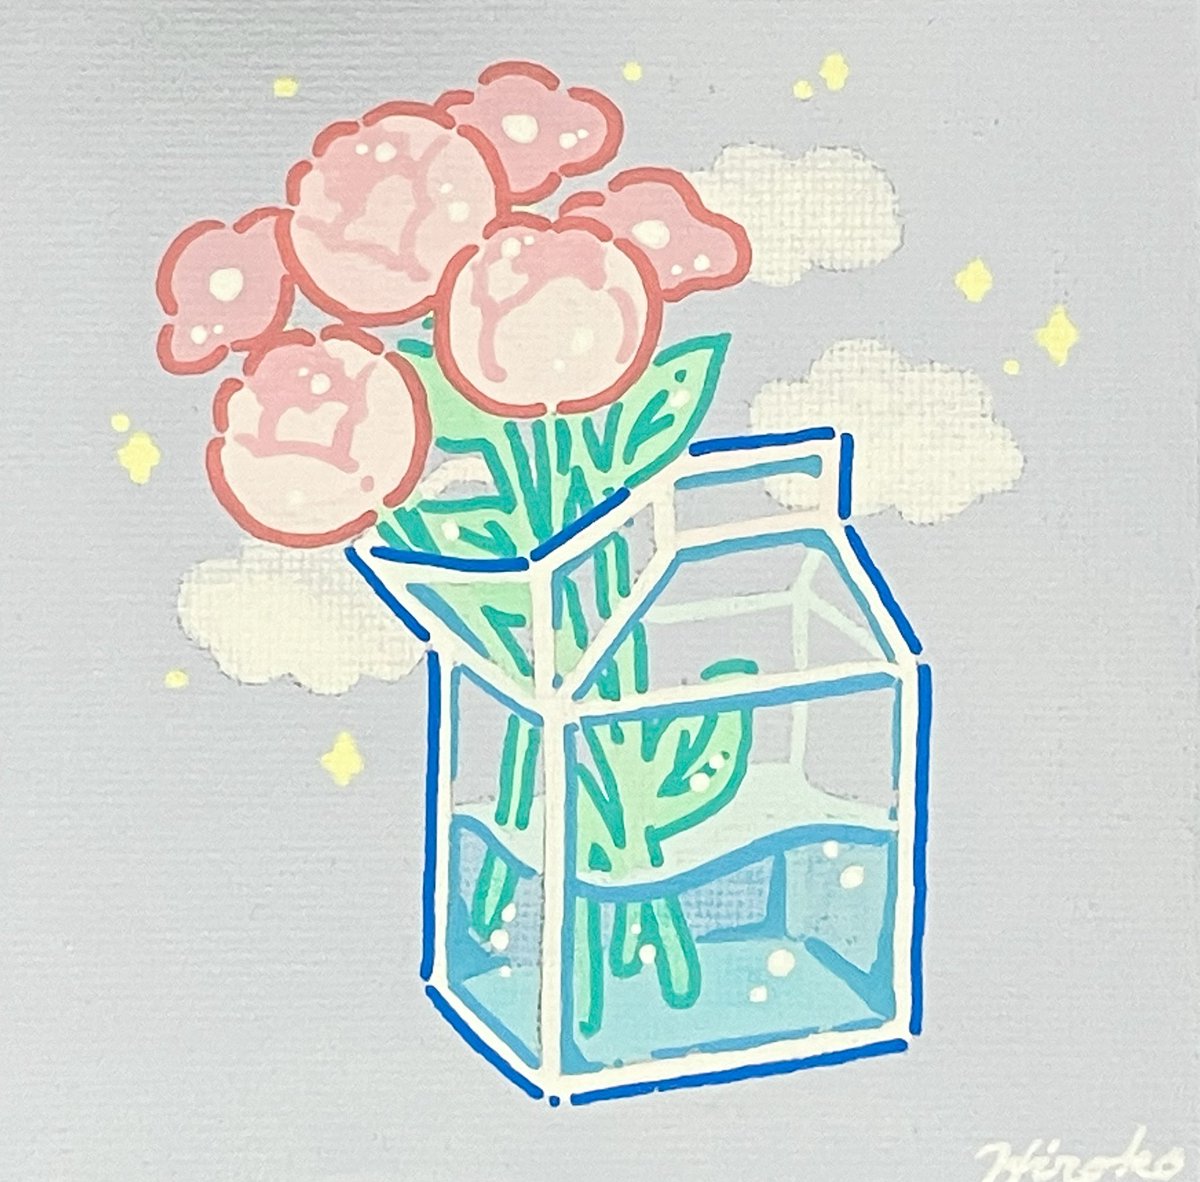 「#TLを花でいっぱいにしよう 」|ヒロコのイラスト